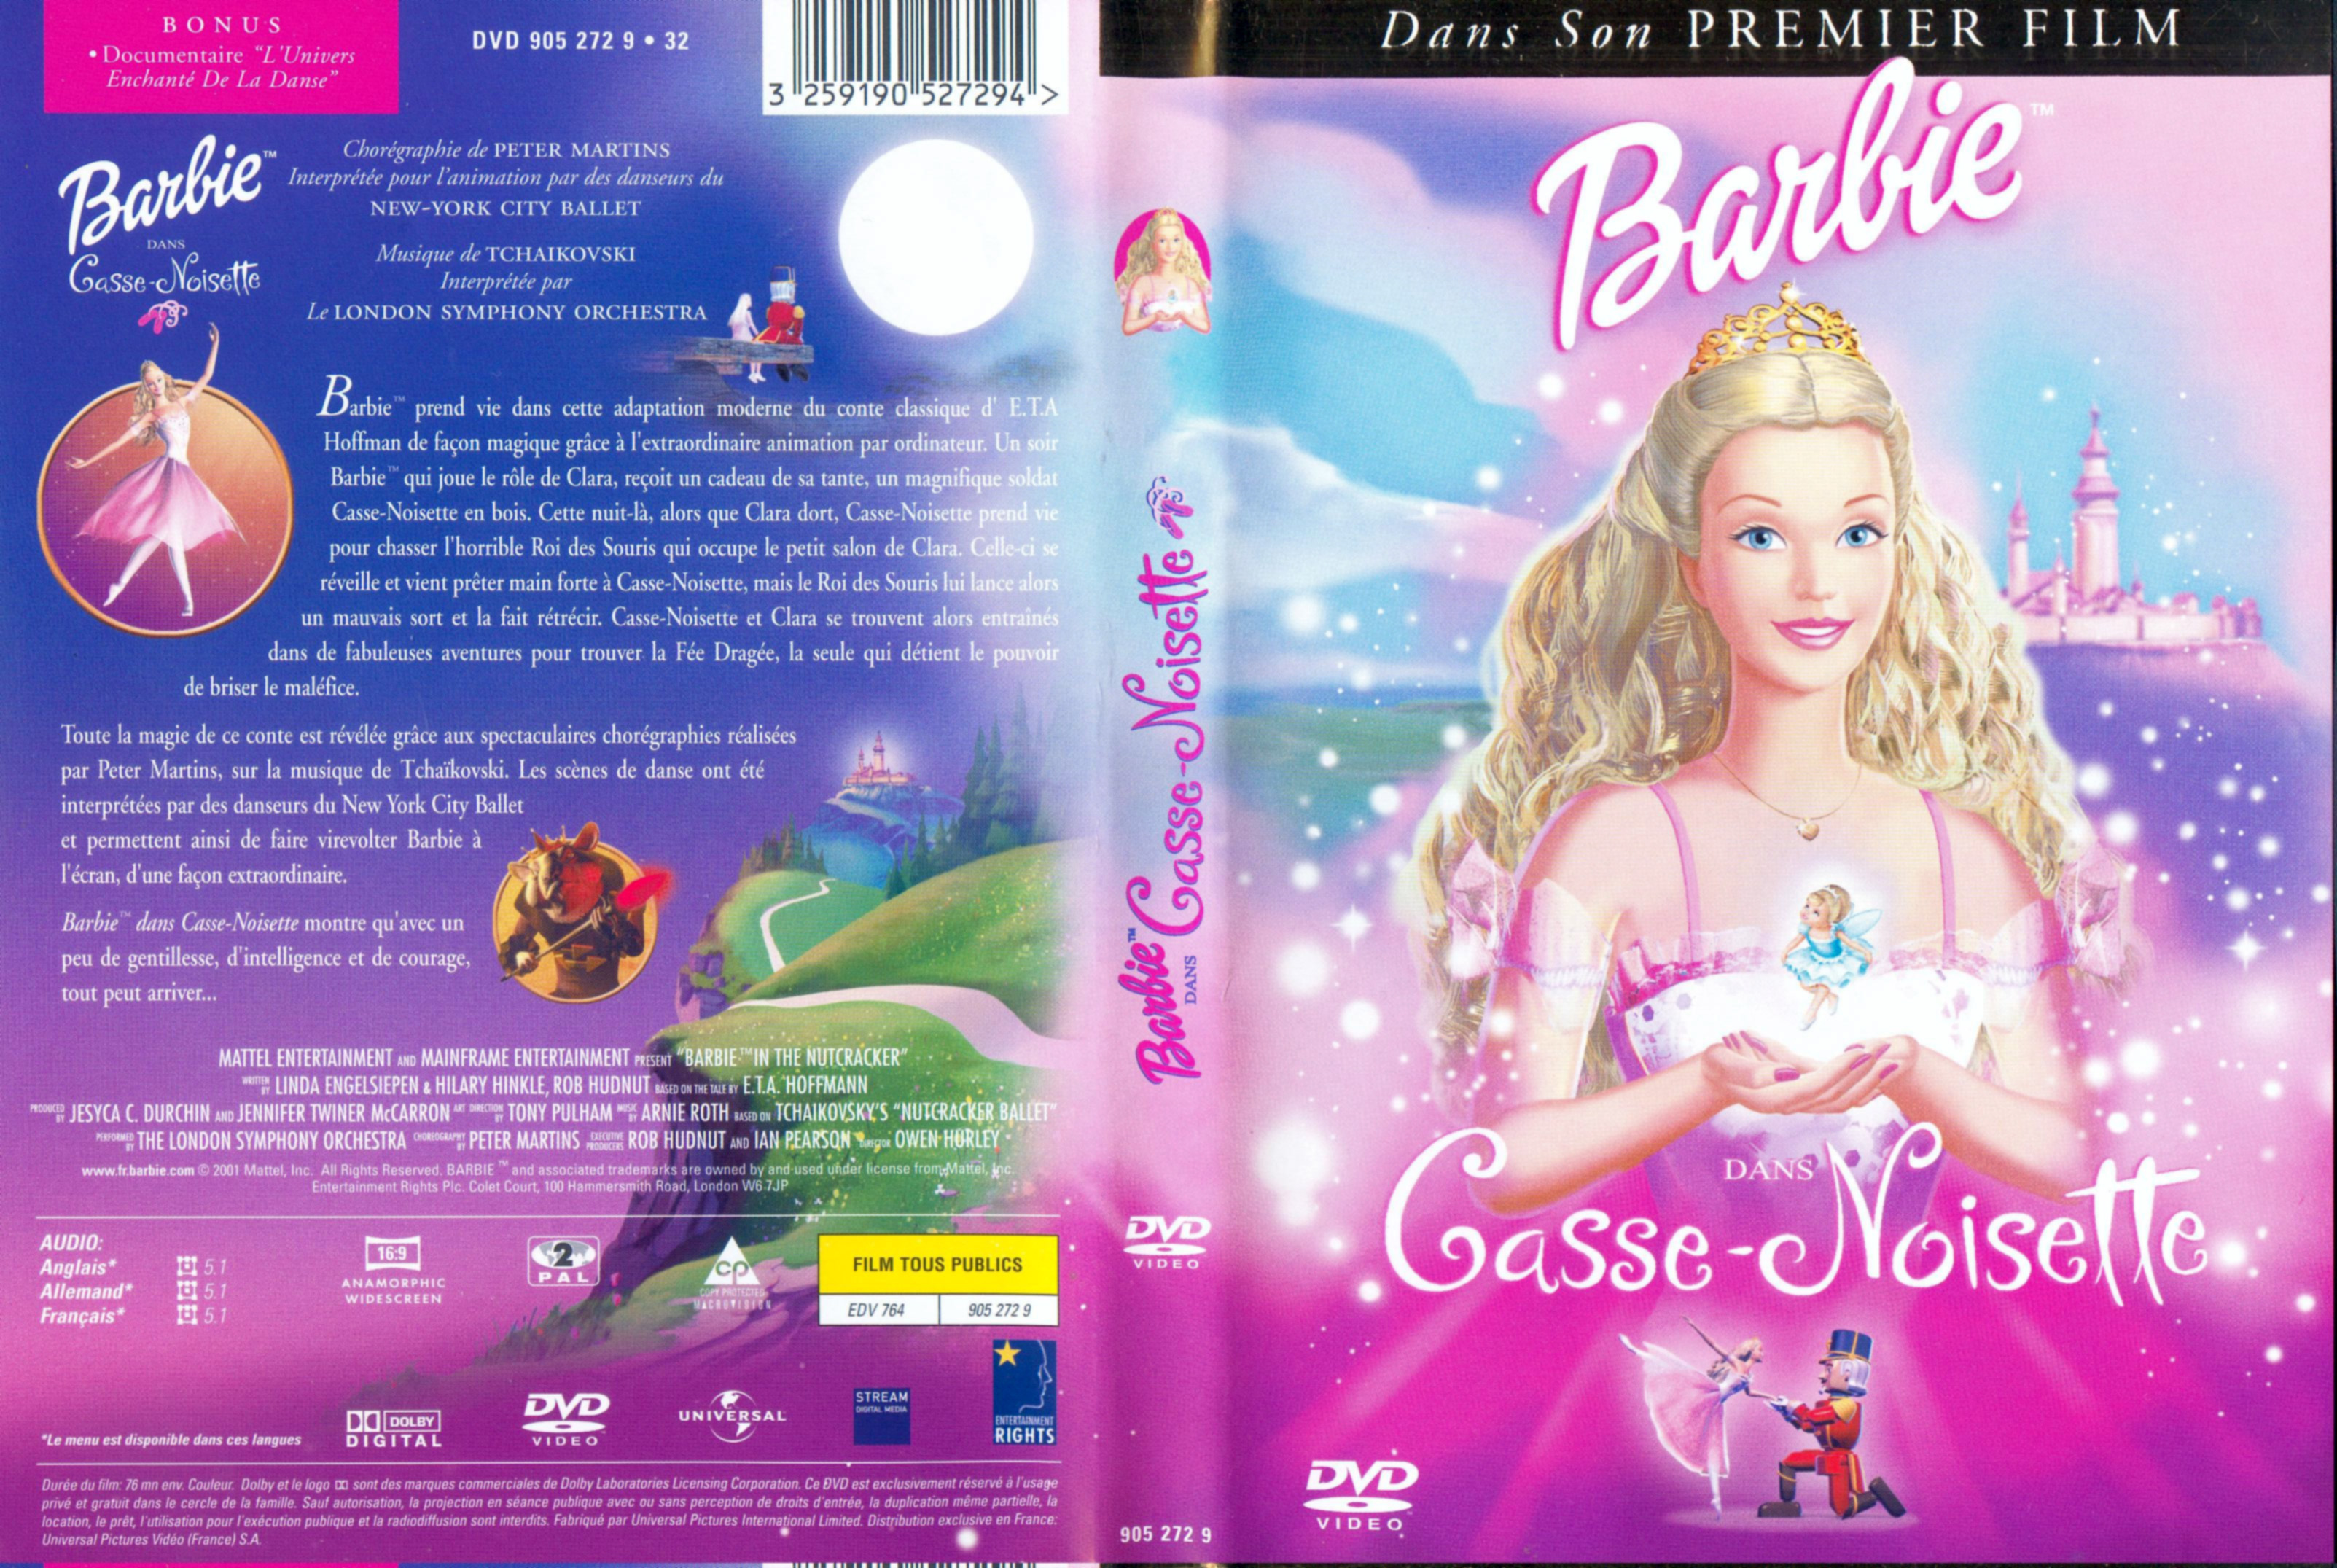 Jaquette DVD Barbie casse-noisettes